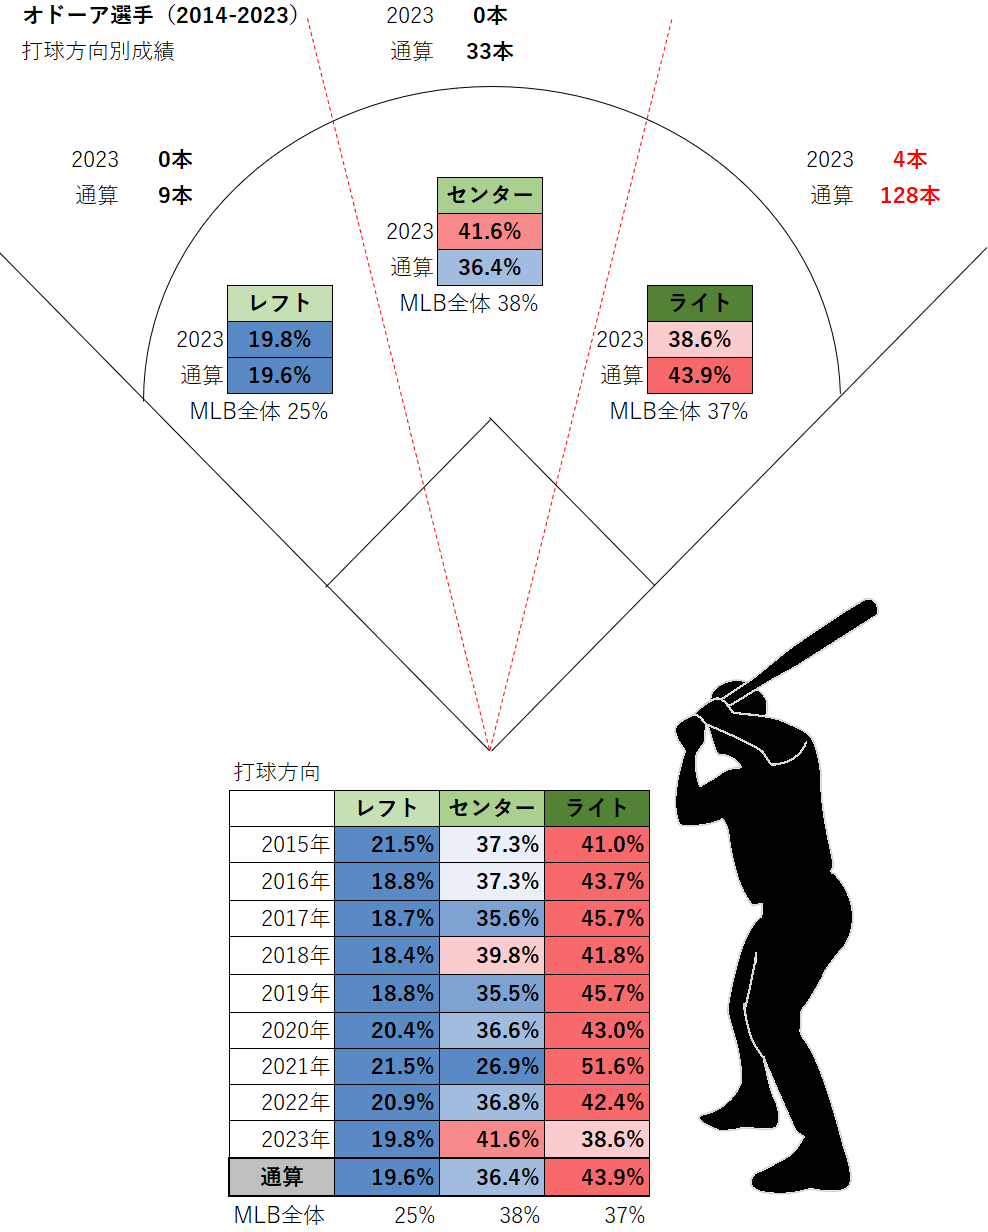 ルーグネッド・オドーア選手の打球方向別成績（MLB2015-2023年）